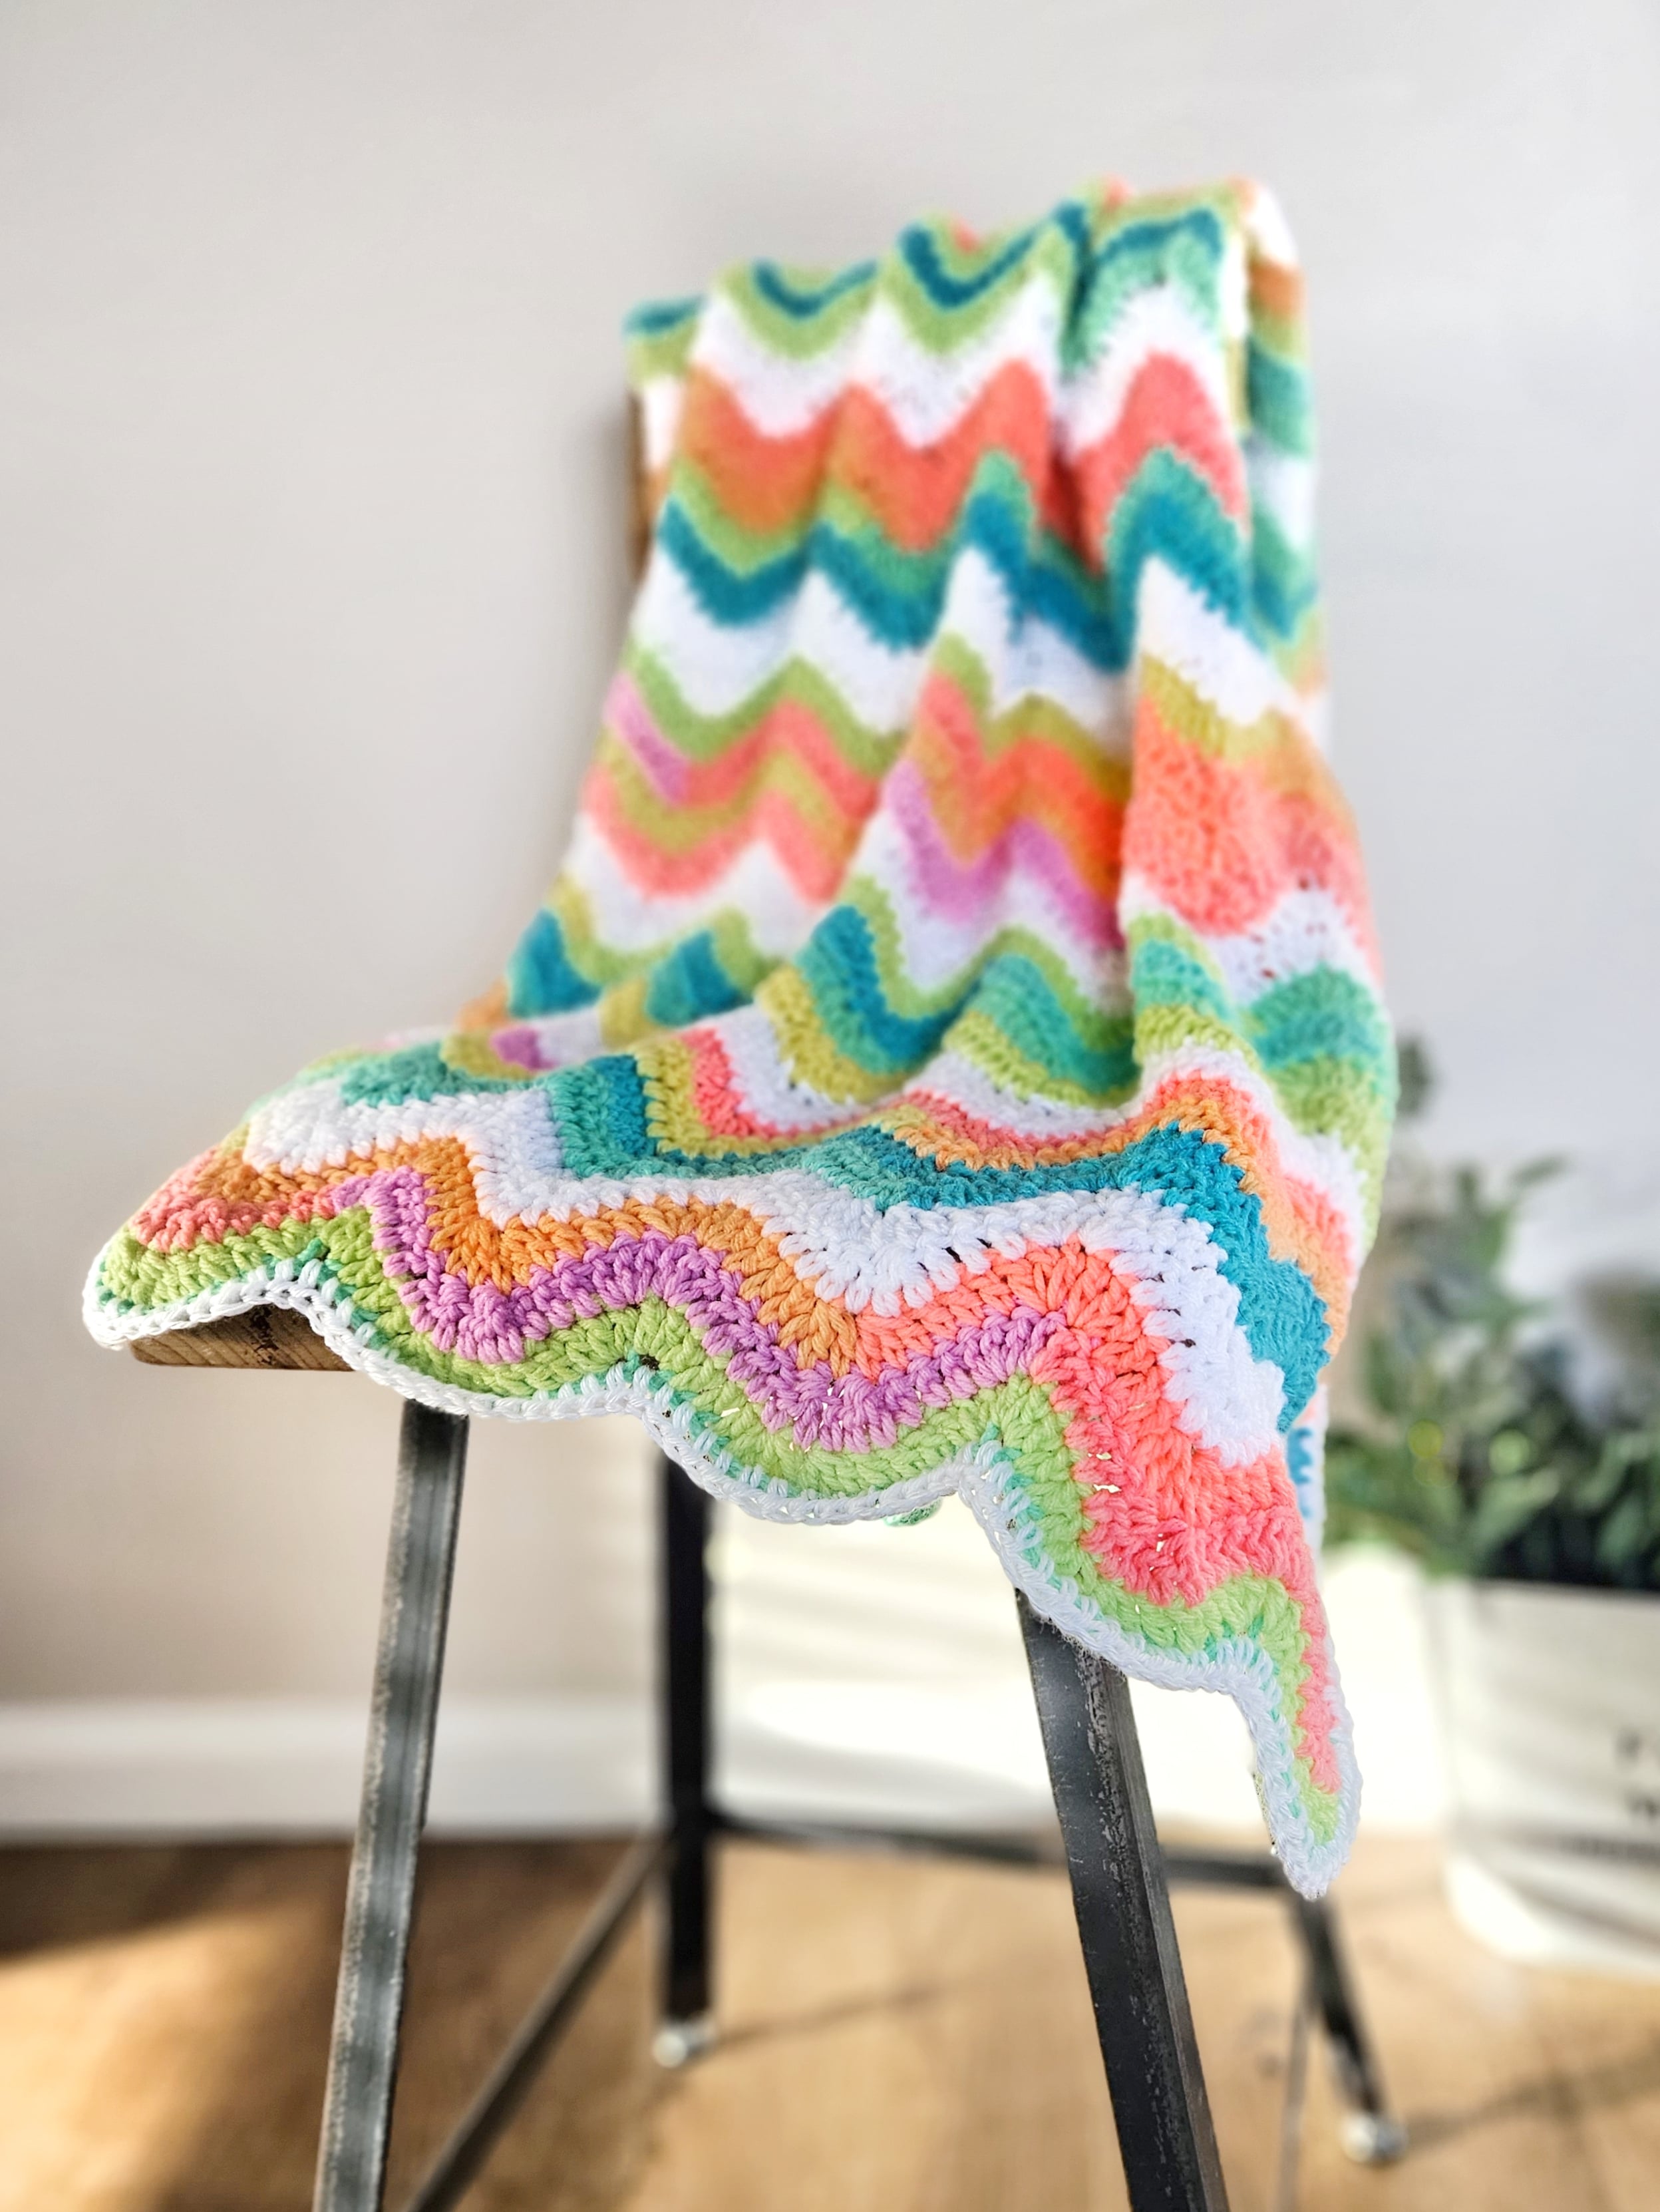 rainbow crochet blanket on a chair